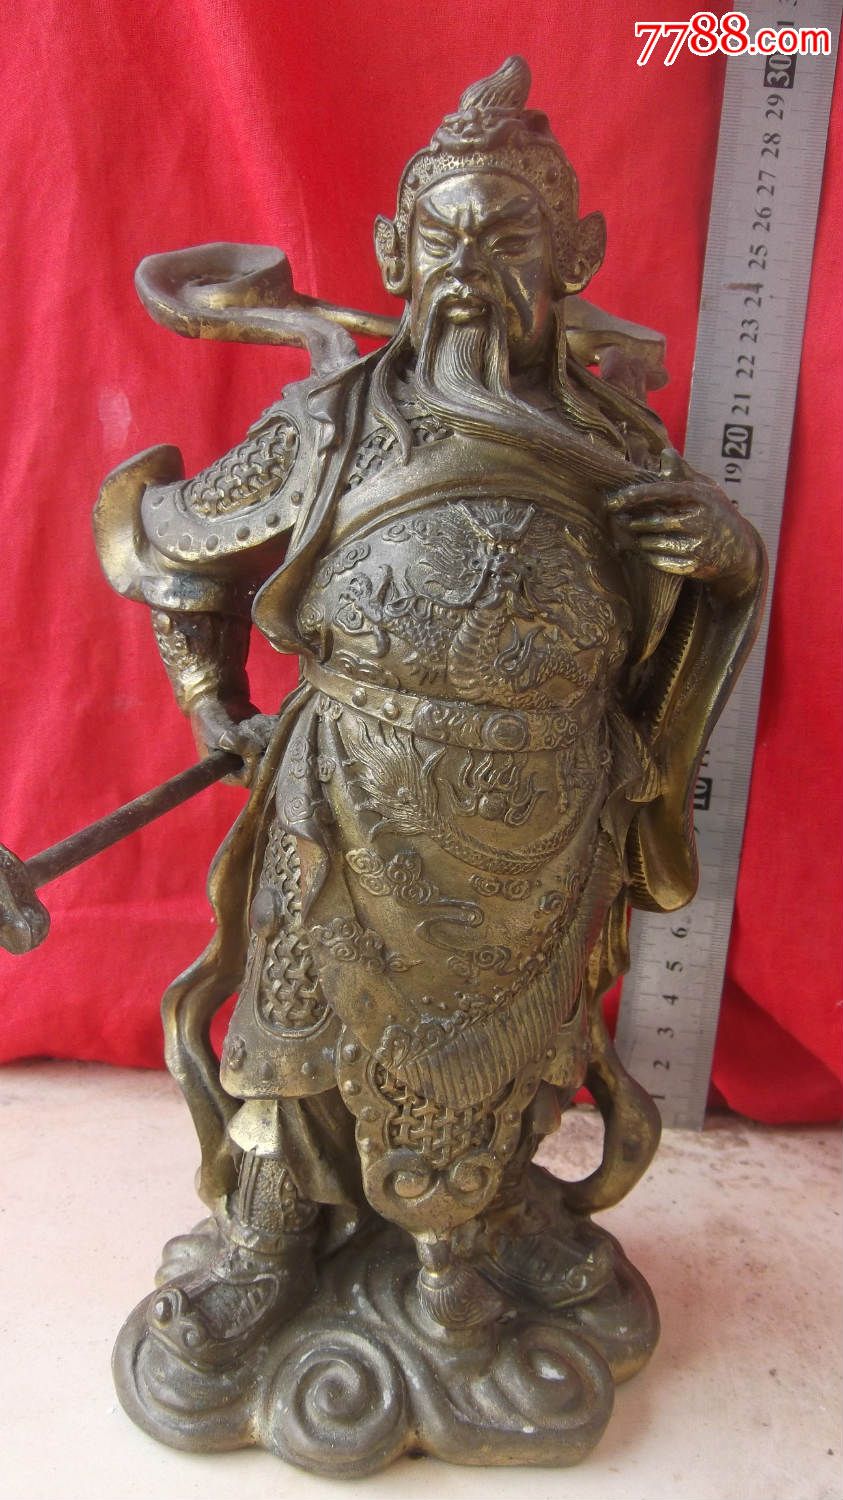 铜关公铜像,重5.3斤,藏品不老,手上的东西可以取下来